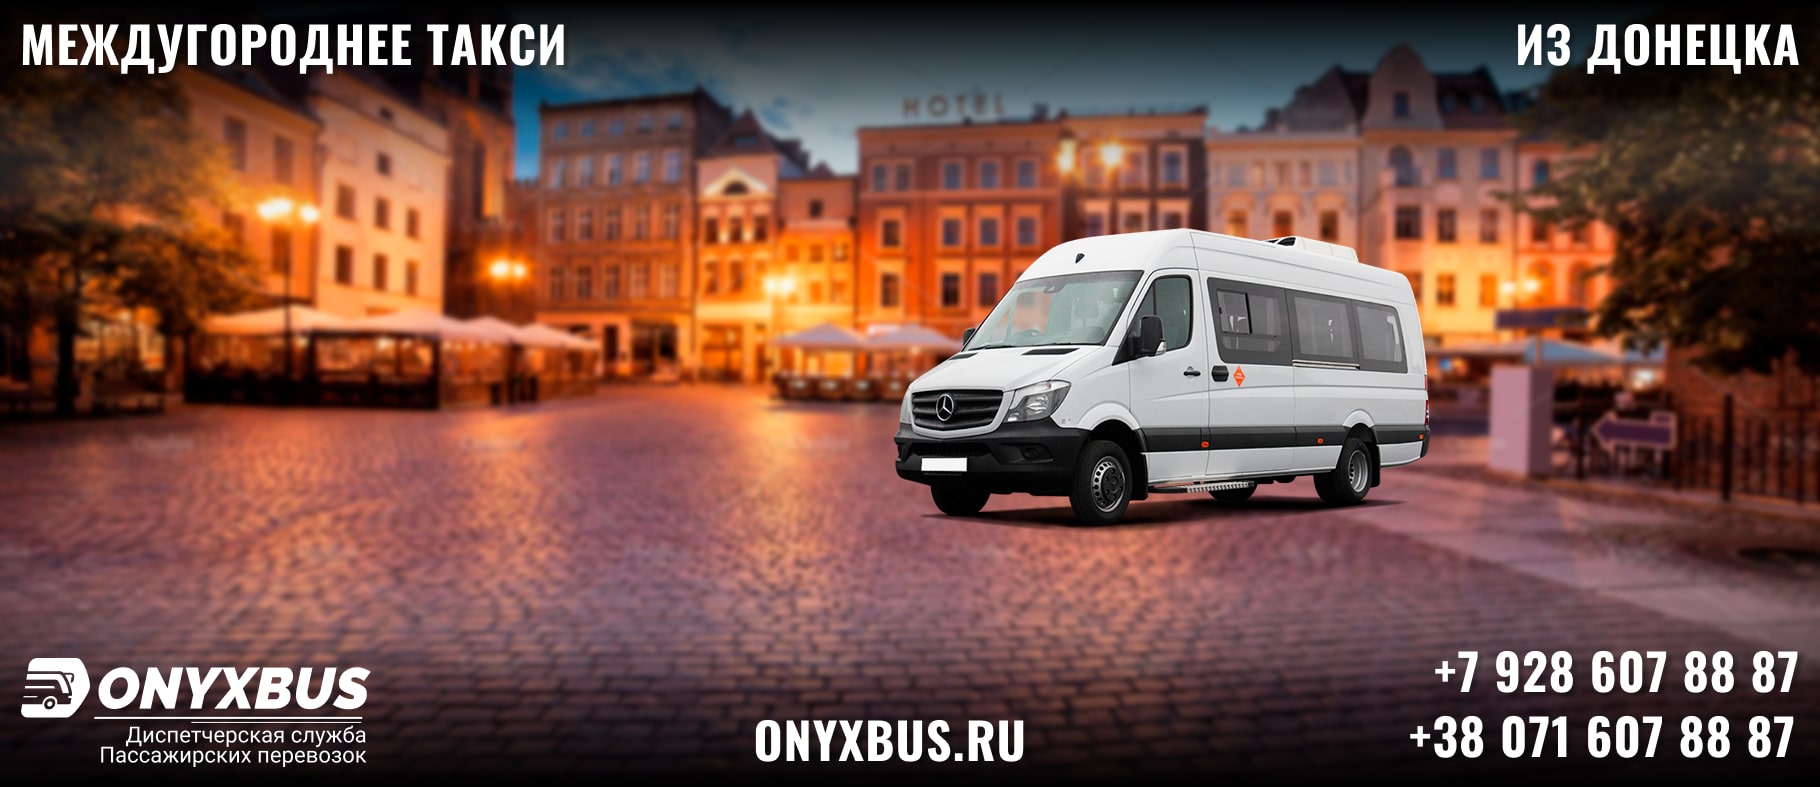 Заказ <br>Микроавтобуса Нехотеевка - Донецк